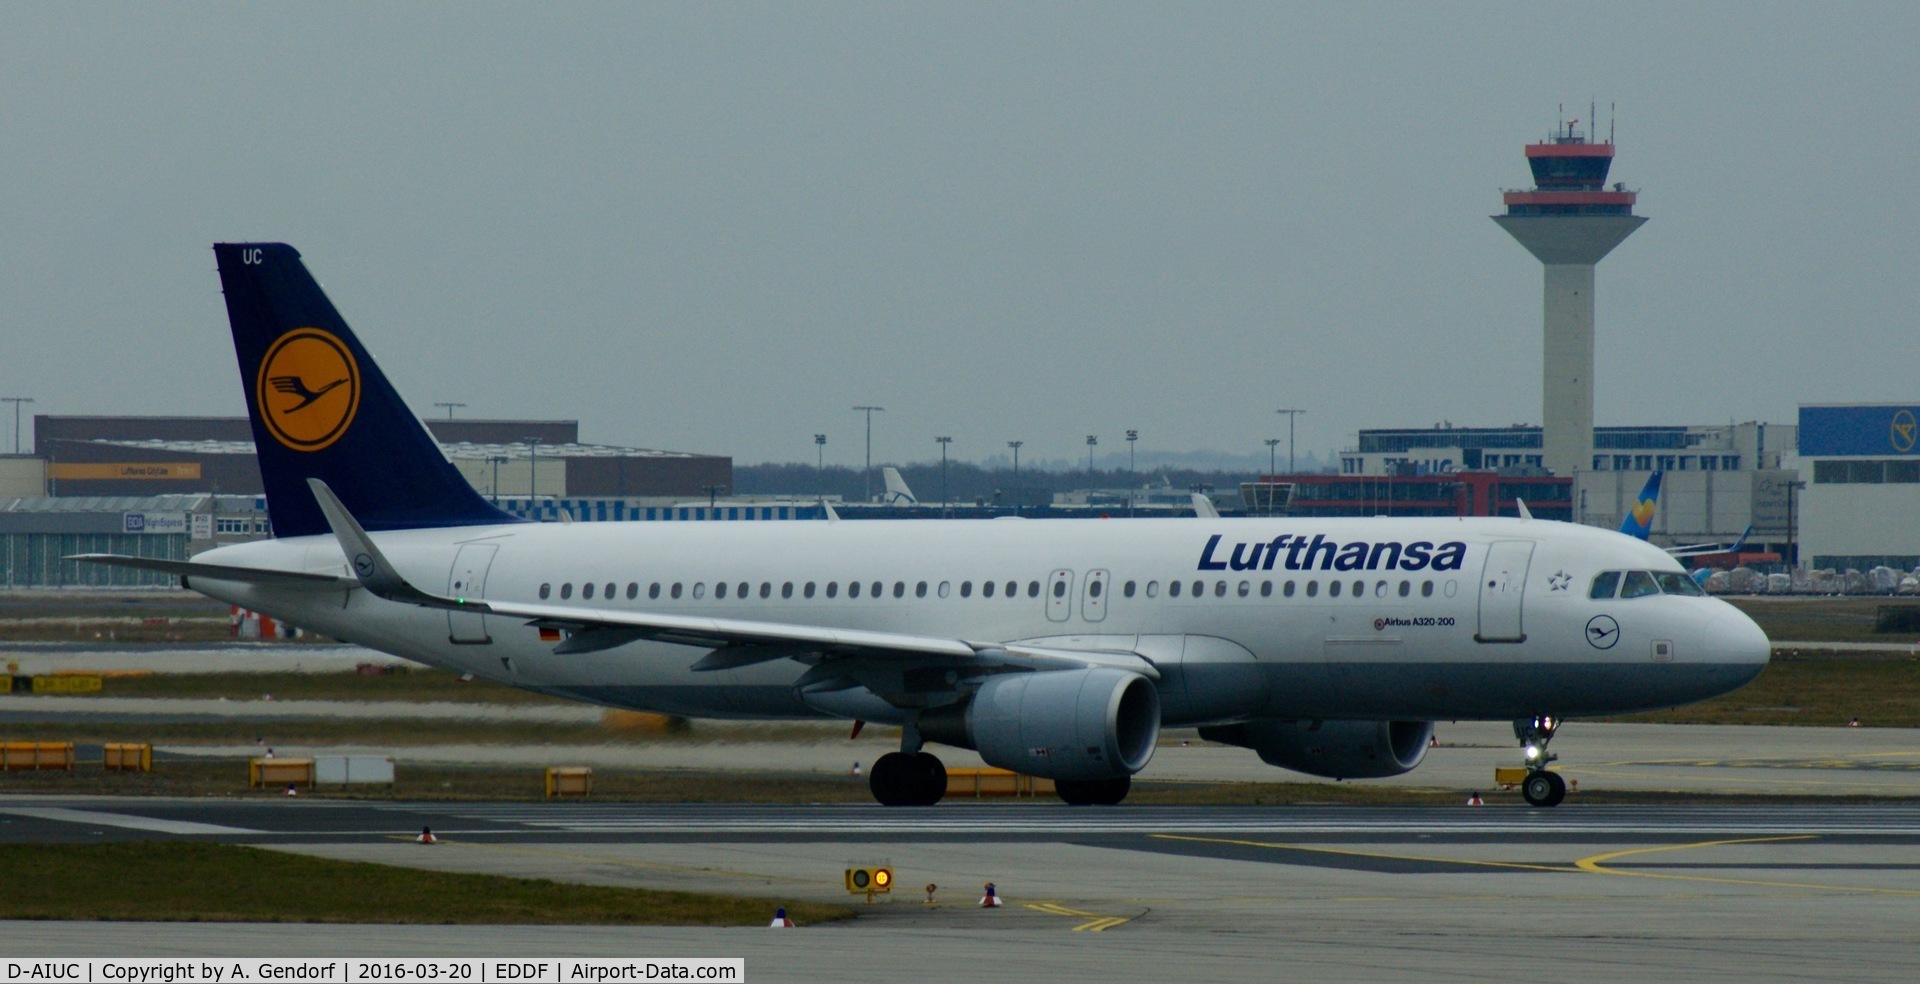 D-AIUC, 2014 Airbus A320-214 C/N 6006, Lufthansa, is here taxiing at Frankfurt Rhein/Main(EDDF)